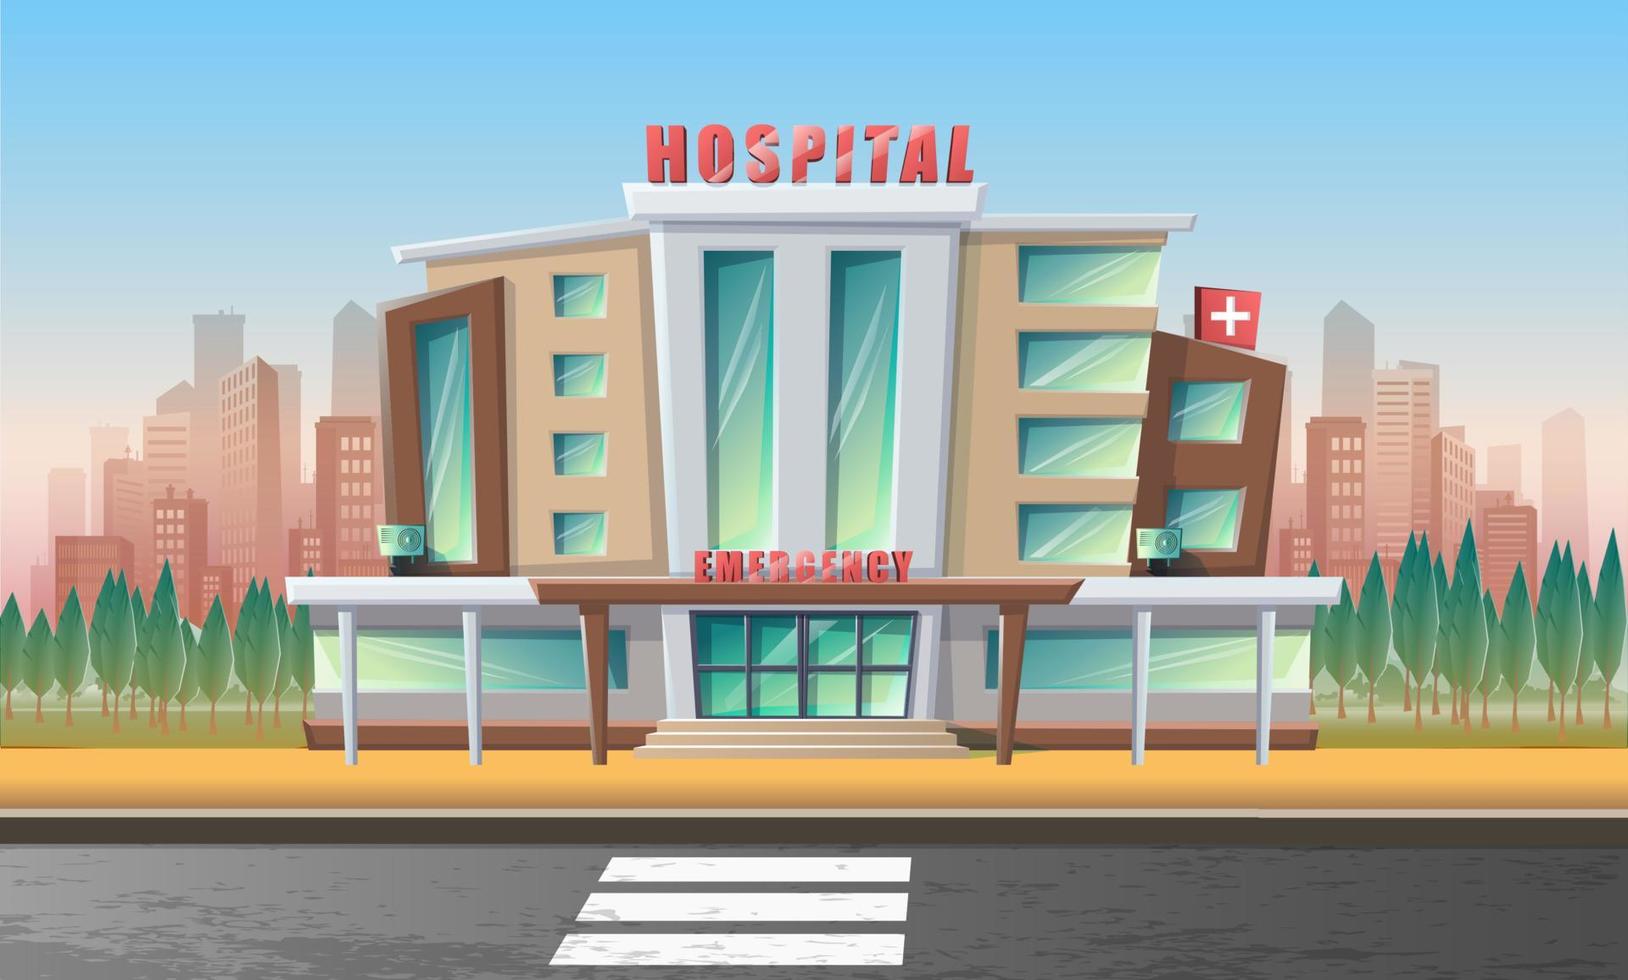 vector cartoon stijl illustratie van ziekenhuis noodgebouw met stadslandschap achter en weg voor.